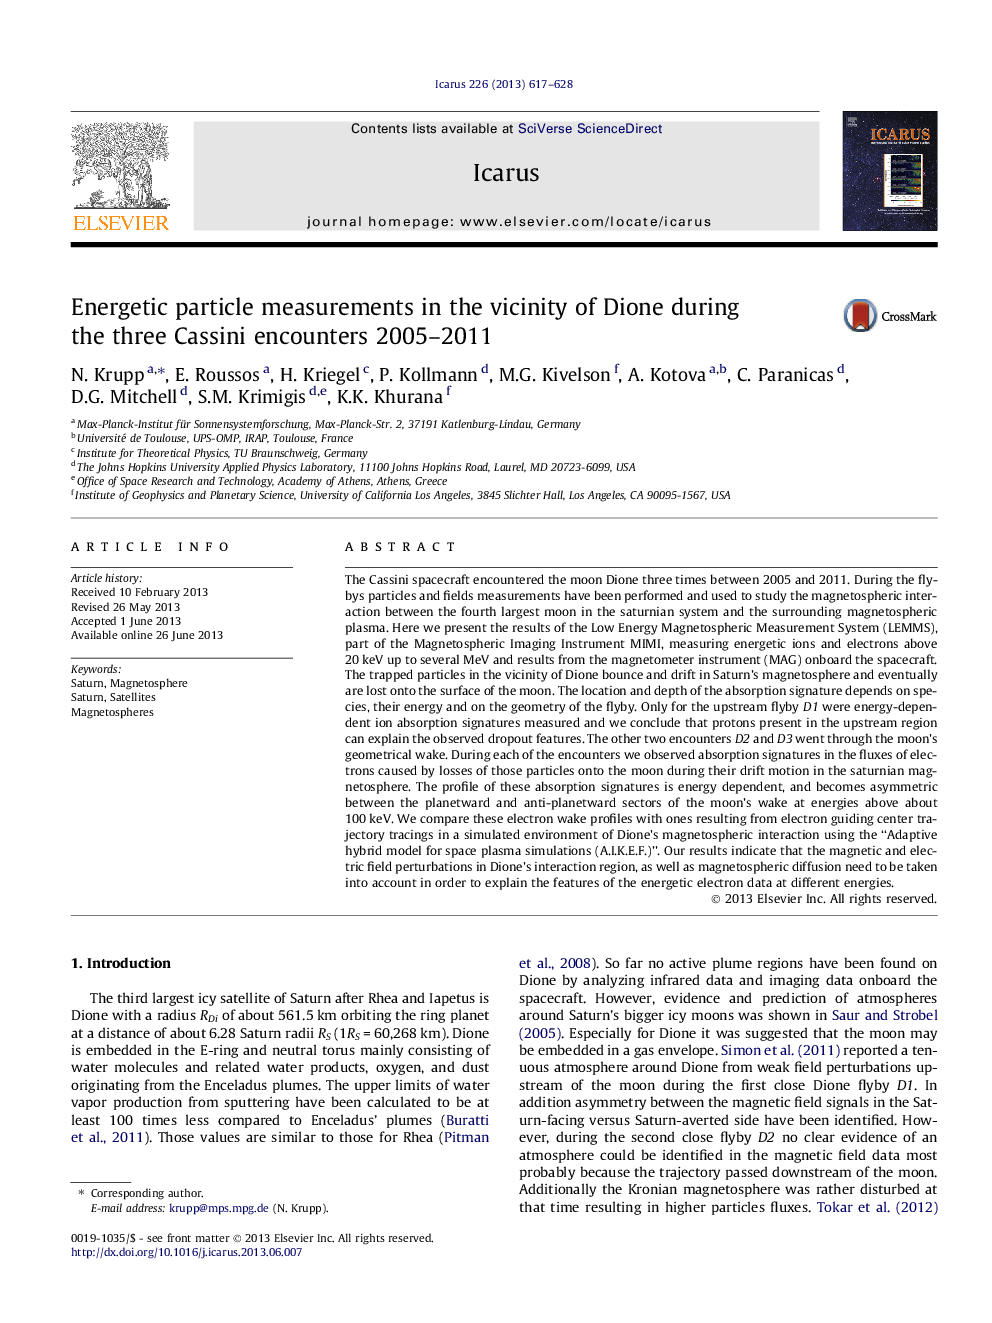 اندازه گیری های ذرات انرژی در مجاورت دئون در طی سه جلسه کاسینی در سال های 2005-2011 